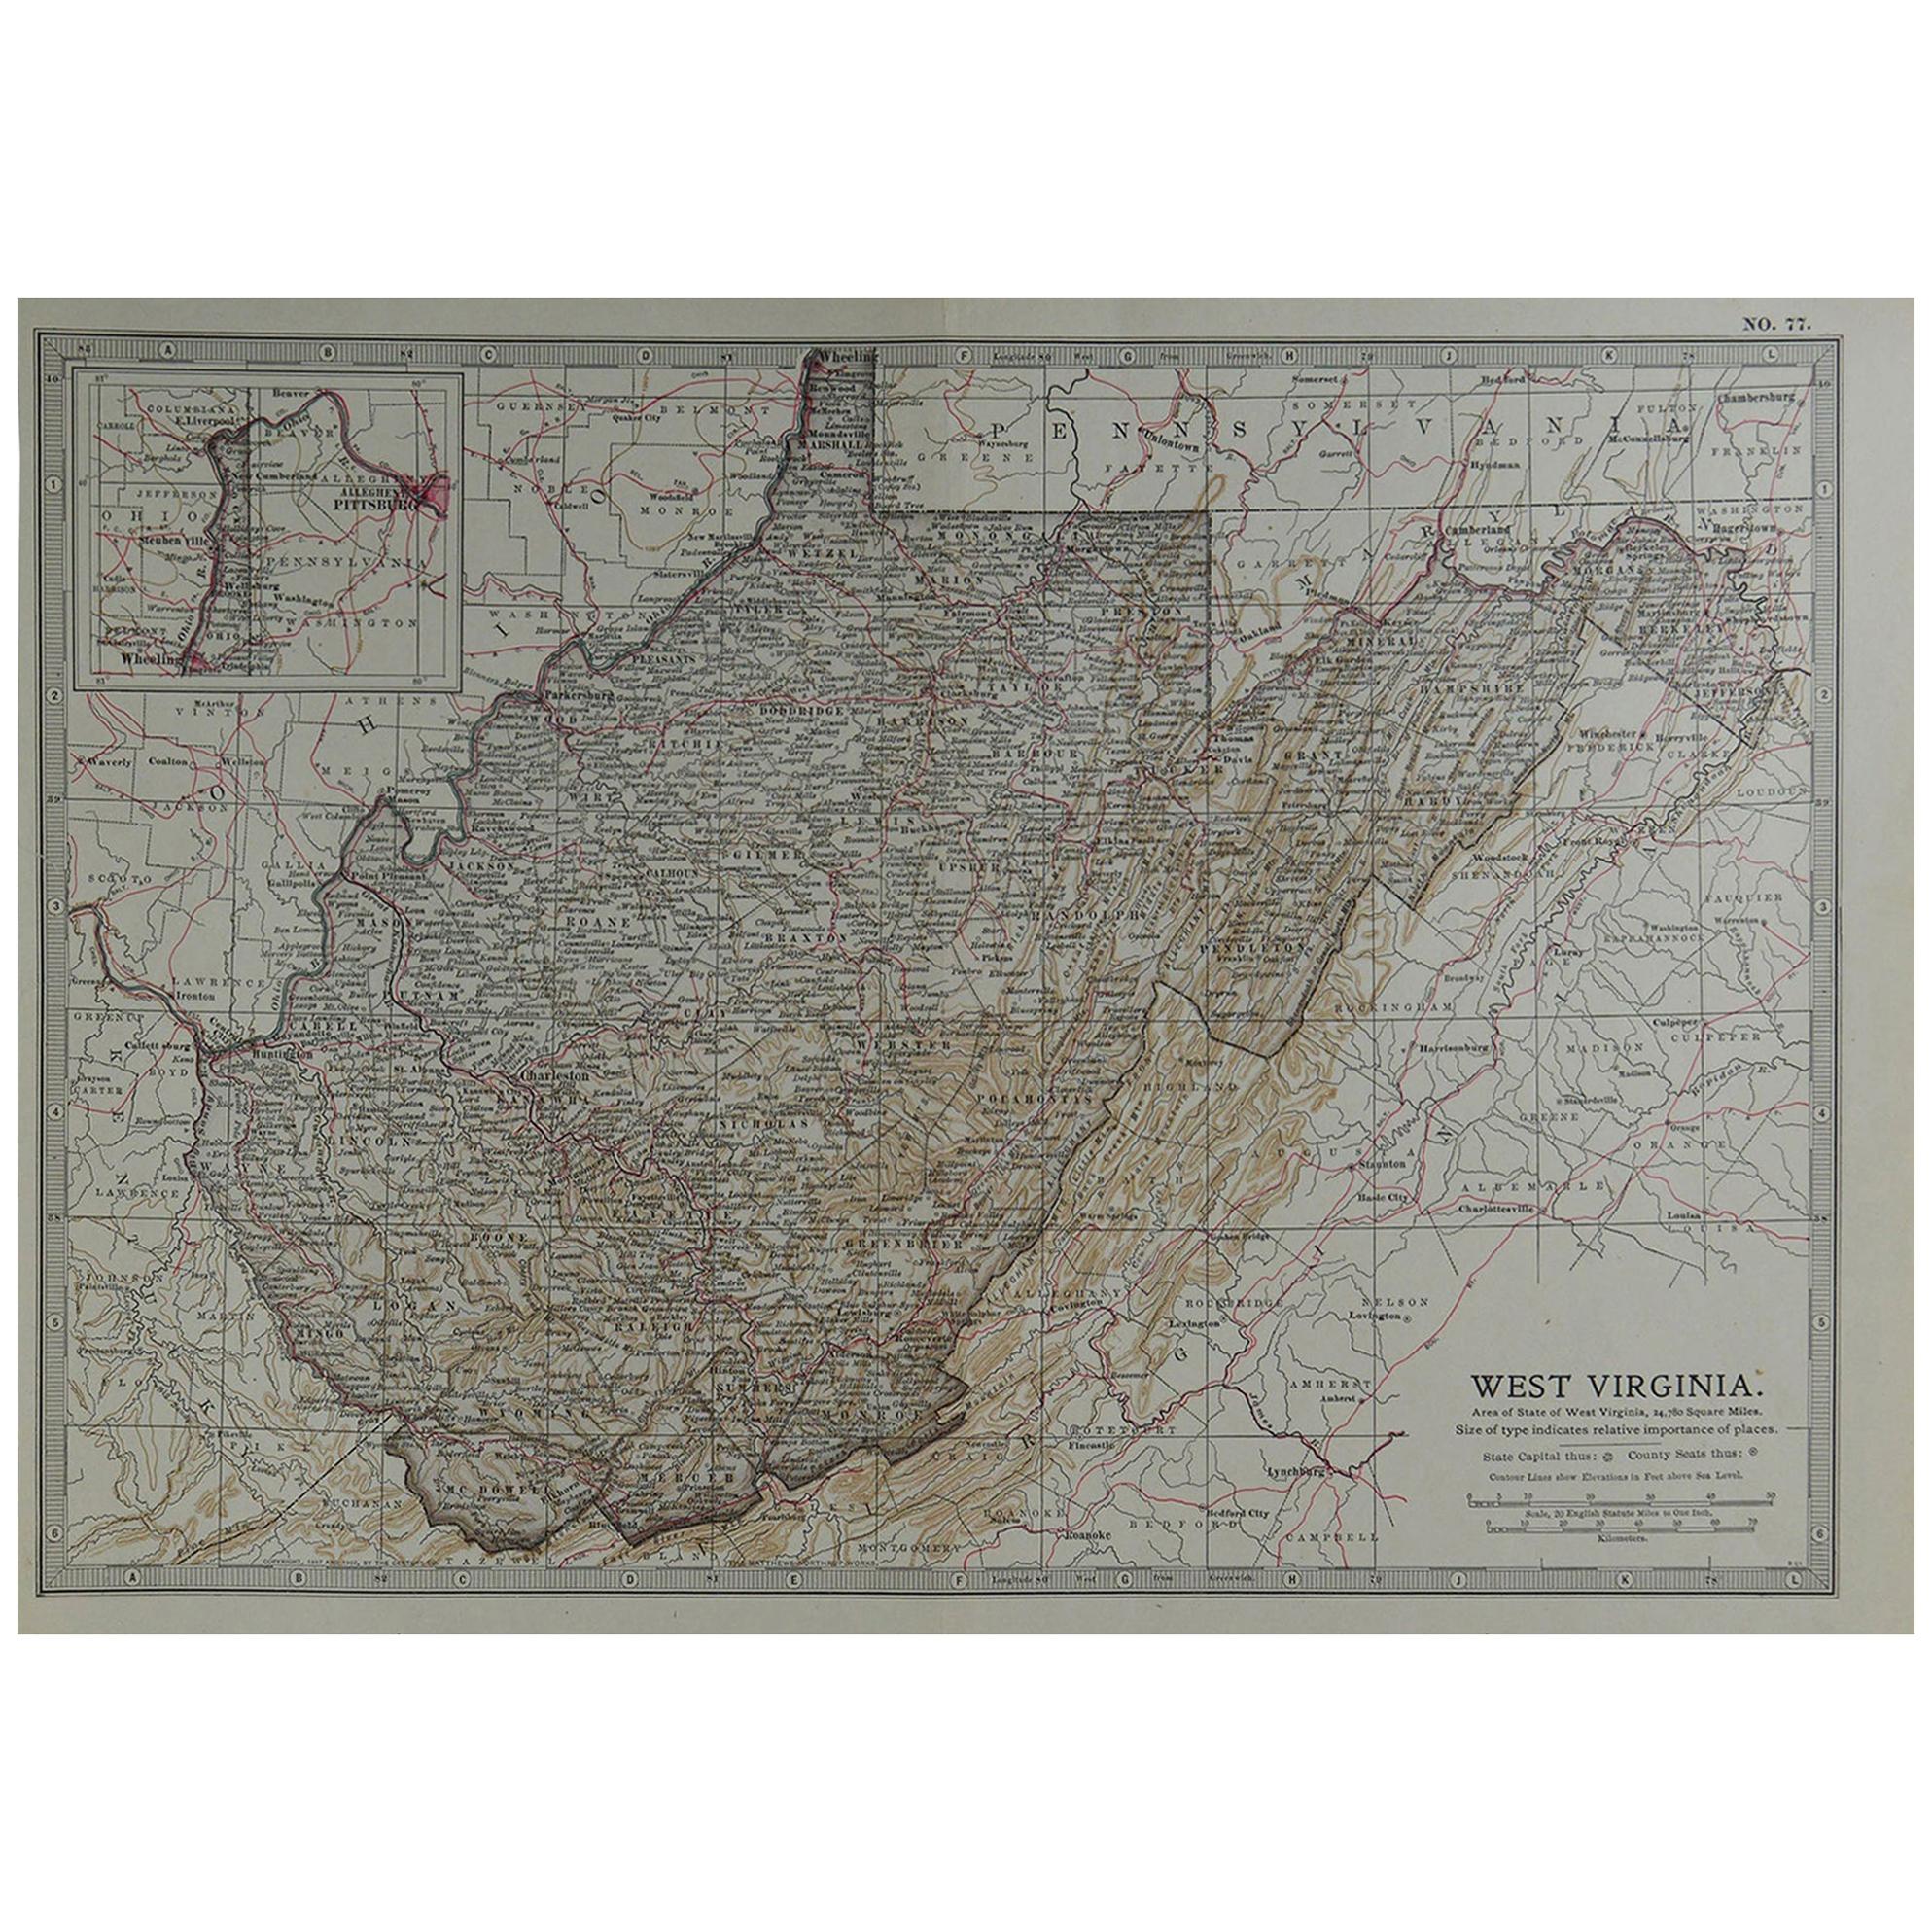 Original Antique Map of West Virginia, circa 1890